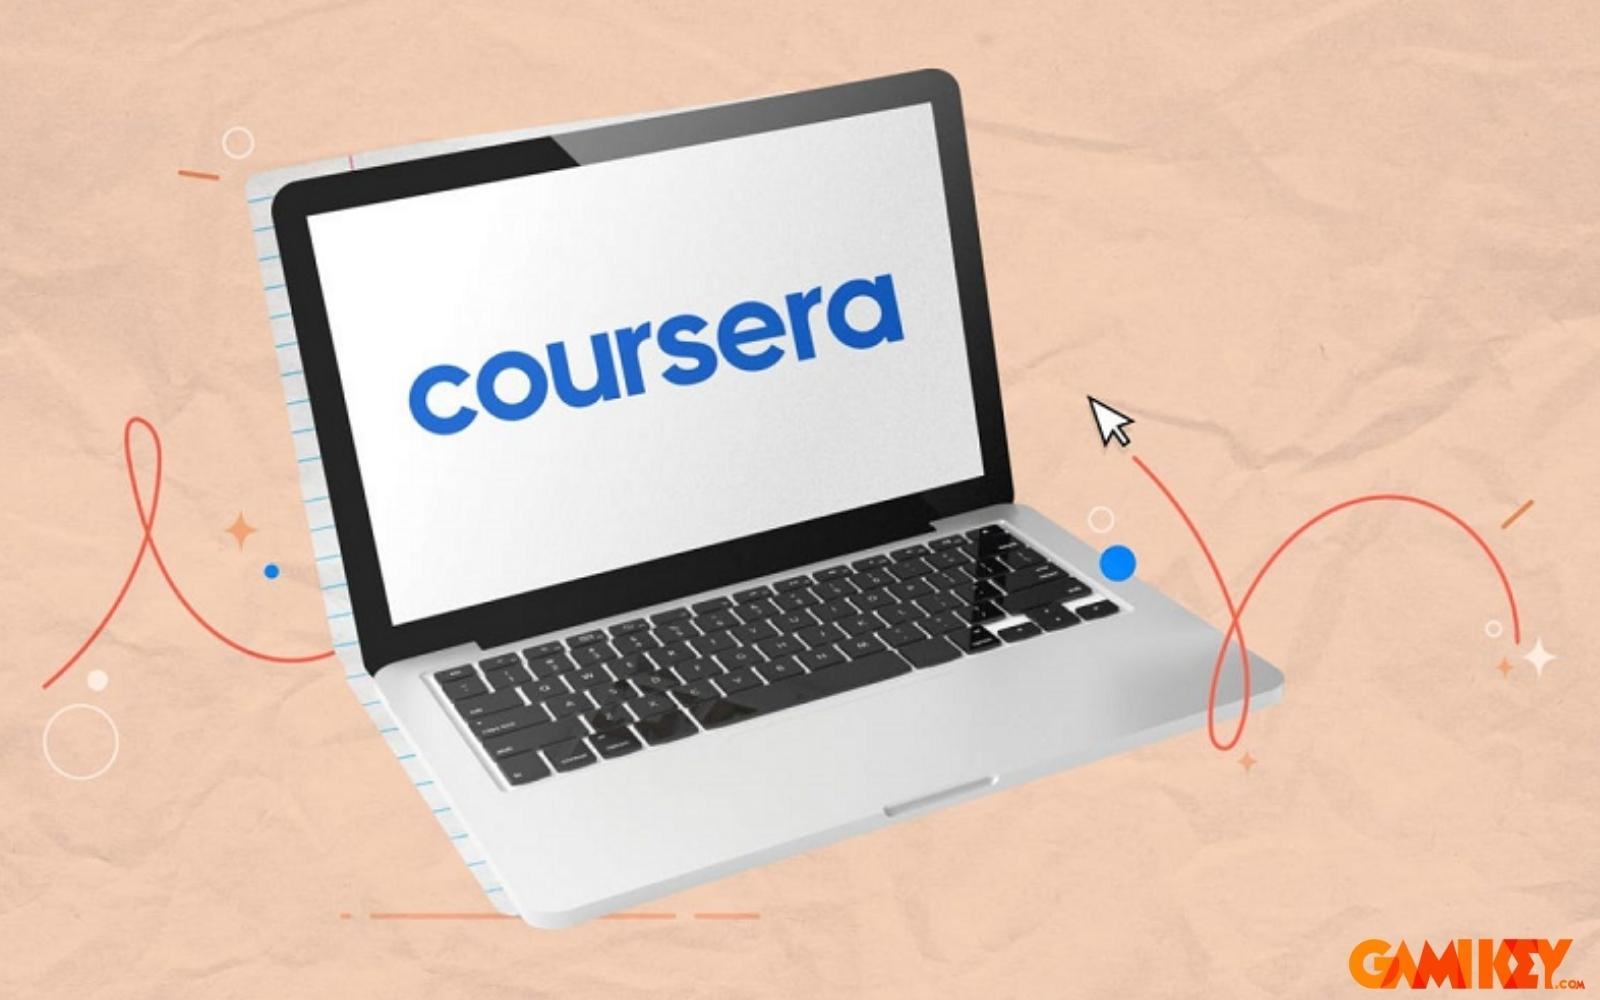 Hướng đãn 3 bước đăng ký khóa học Coursera miễn phí